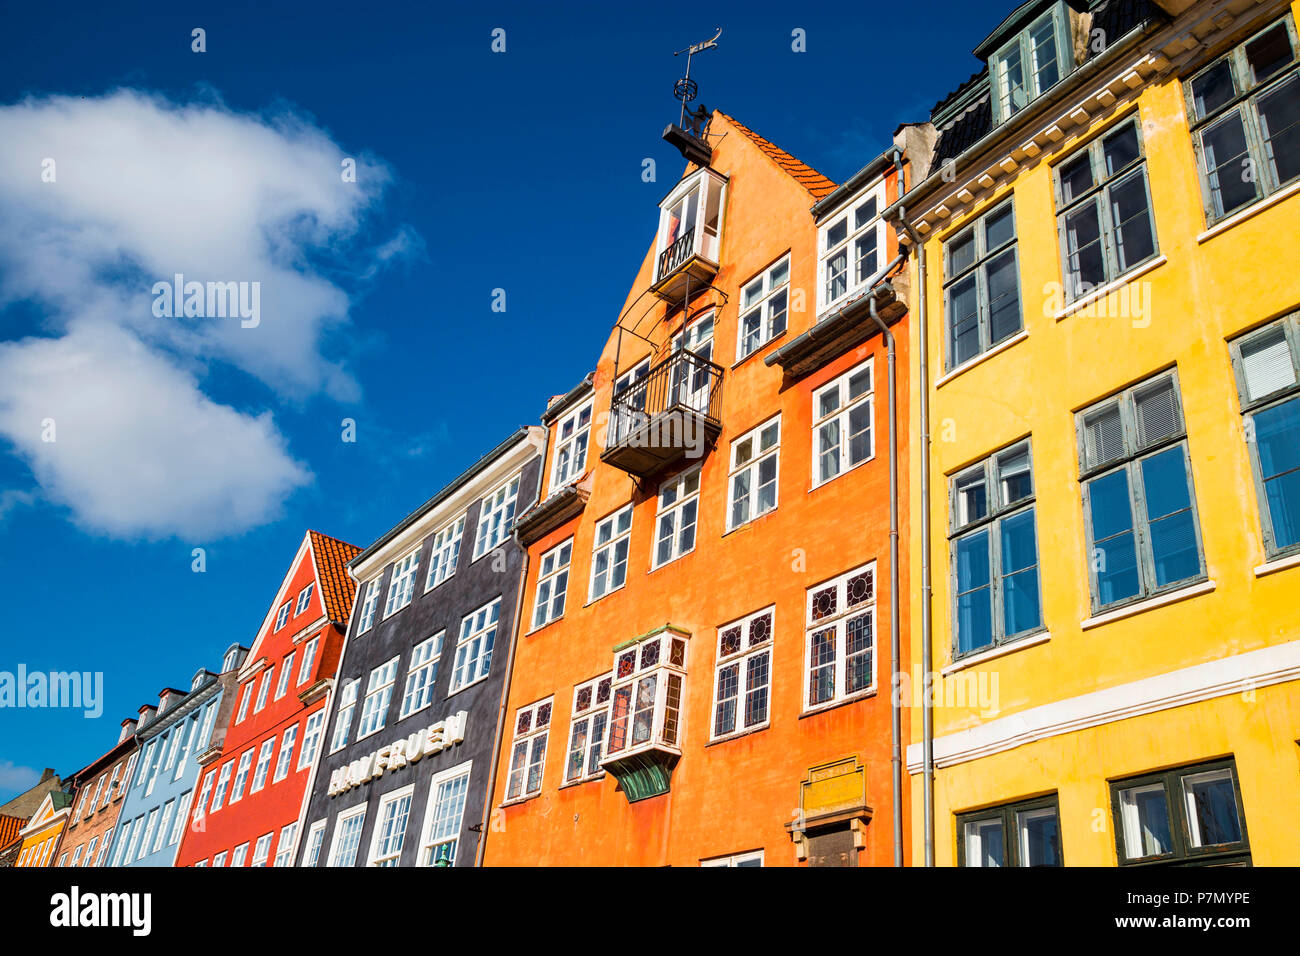 Nyhavn, Copenhagen old town, Denmark Stock Photo